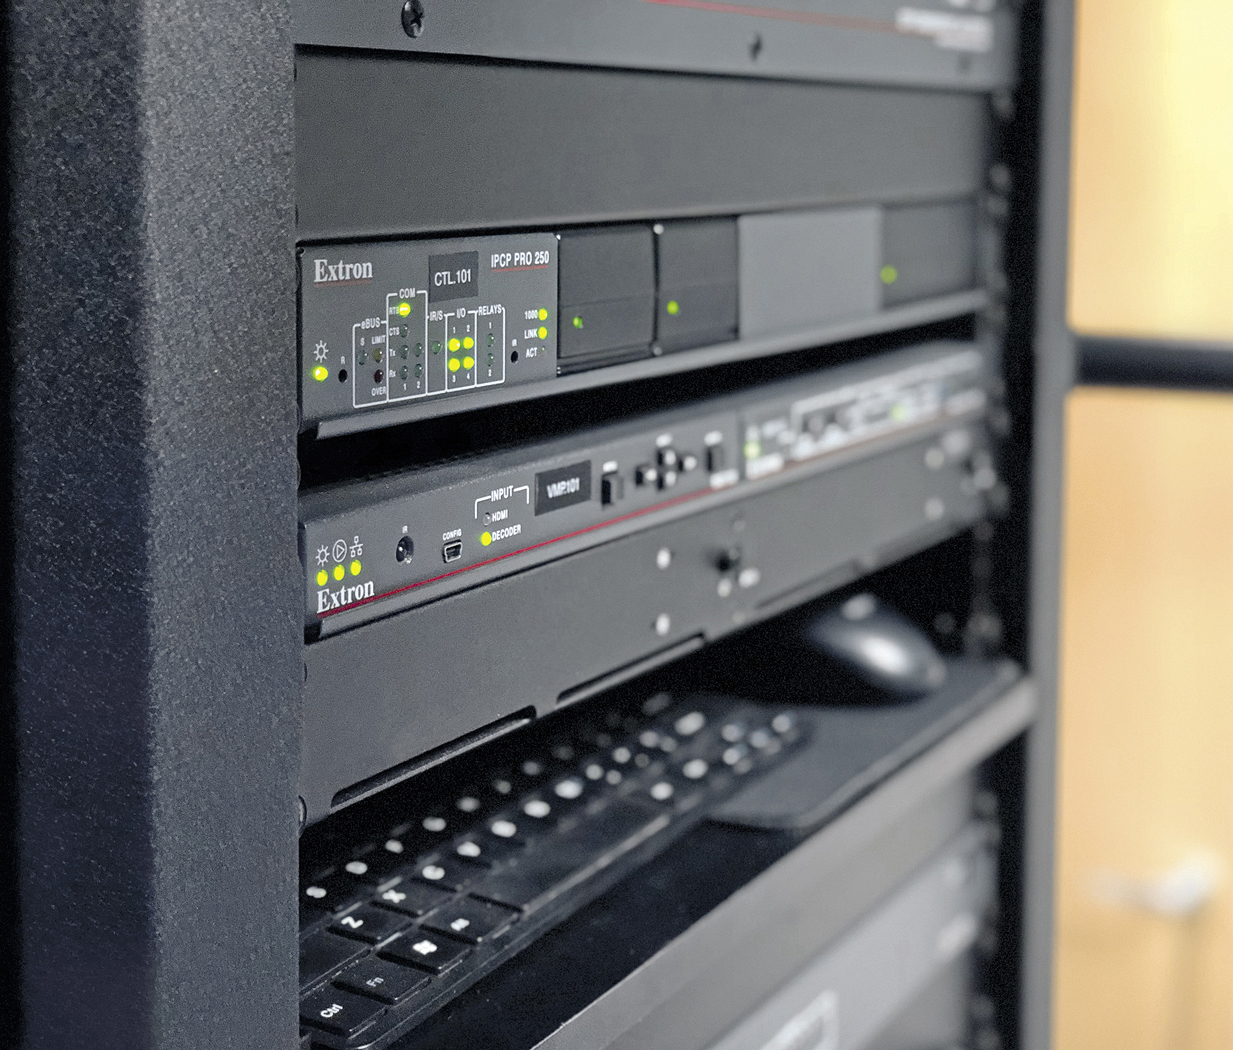 Durch die kompakte Größe und Energieeffizienz der verschiedenen Extron-Produkte, wie z. B. des IPCP Pro 250-Steuerungsprozessors und SMD 202-Decoders für Medien-Streaming, passten die Geräte in ein Hauptrack.